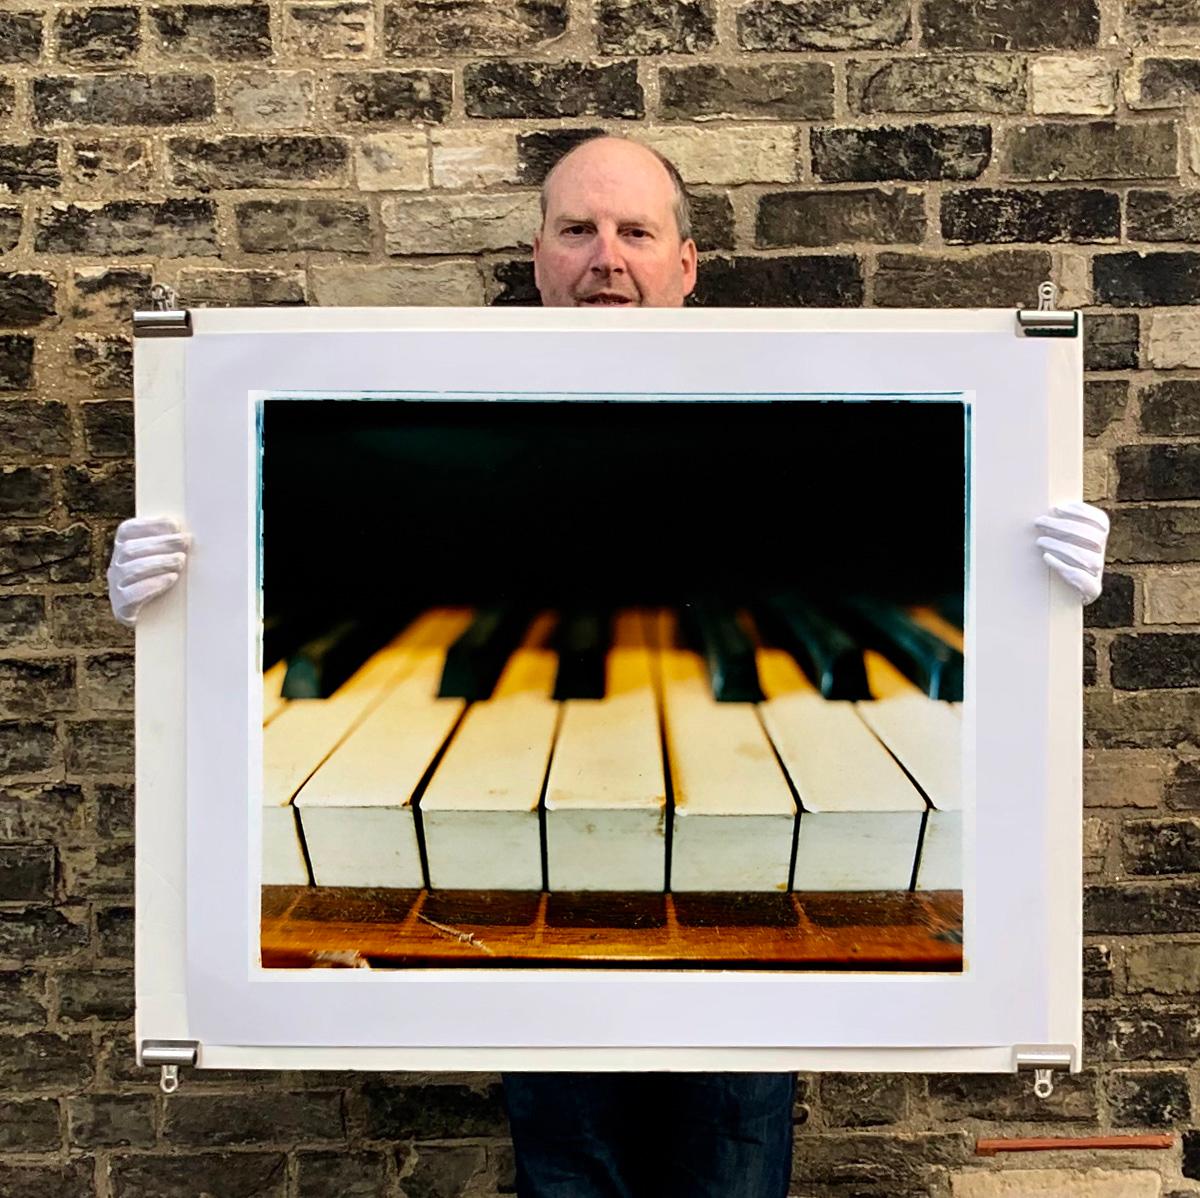 Dieses stimmungsvolle Bild wurde bei der Dokumentation des Preston Hall Museums aufgenommen und fängt das Klavier in allen Einzelheiten ein.

Dieses Kunstwerk ist eine auf 25 Exemplare limitierte Auflage von fotografischen Glanzdrucken, die in der